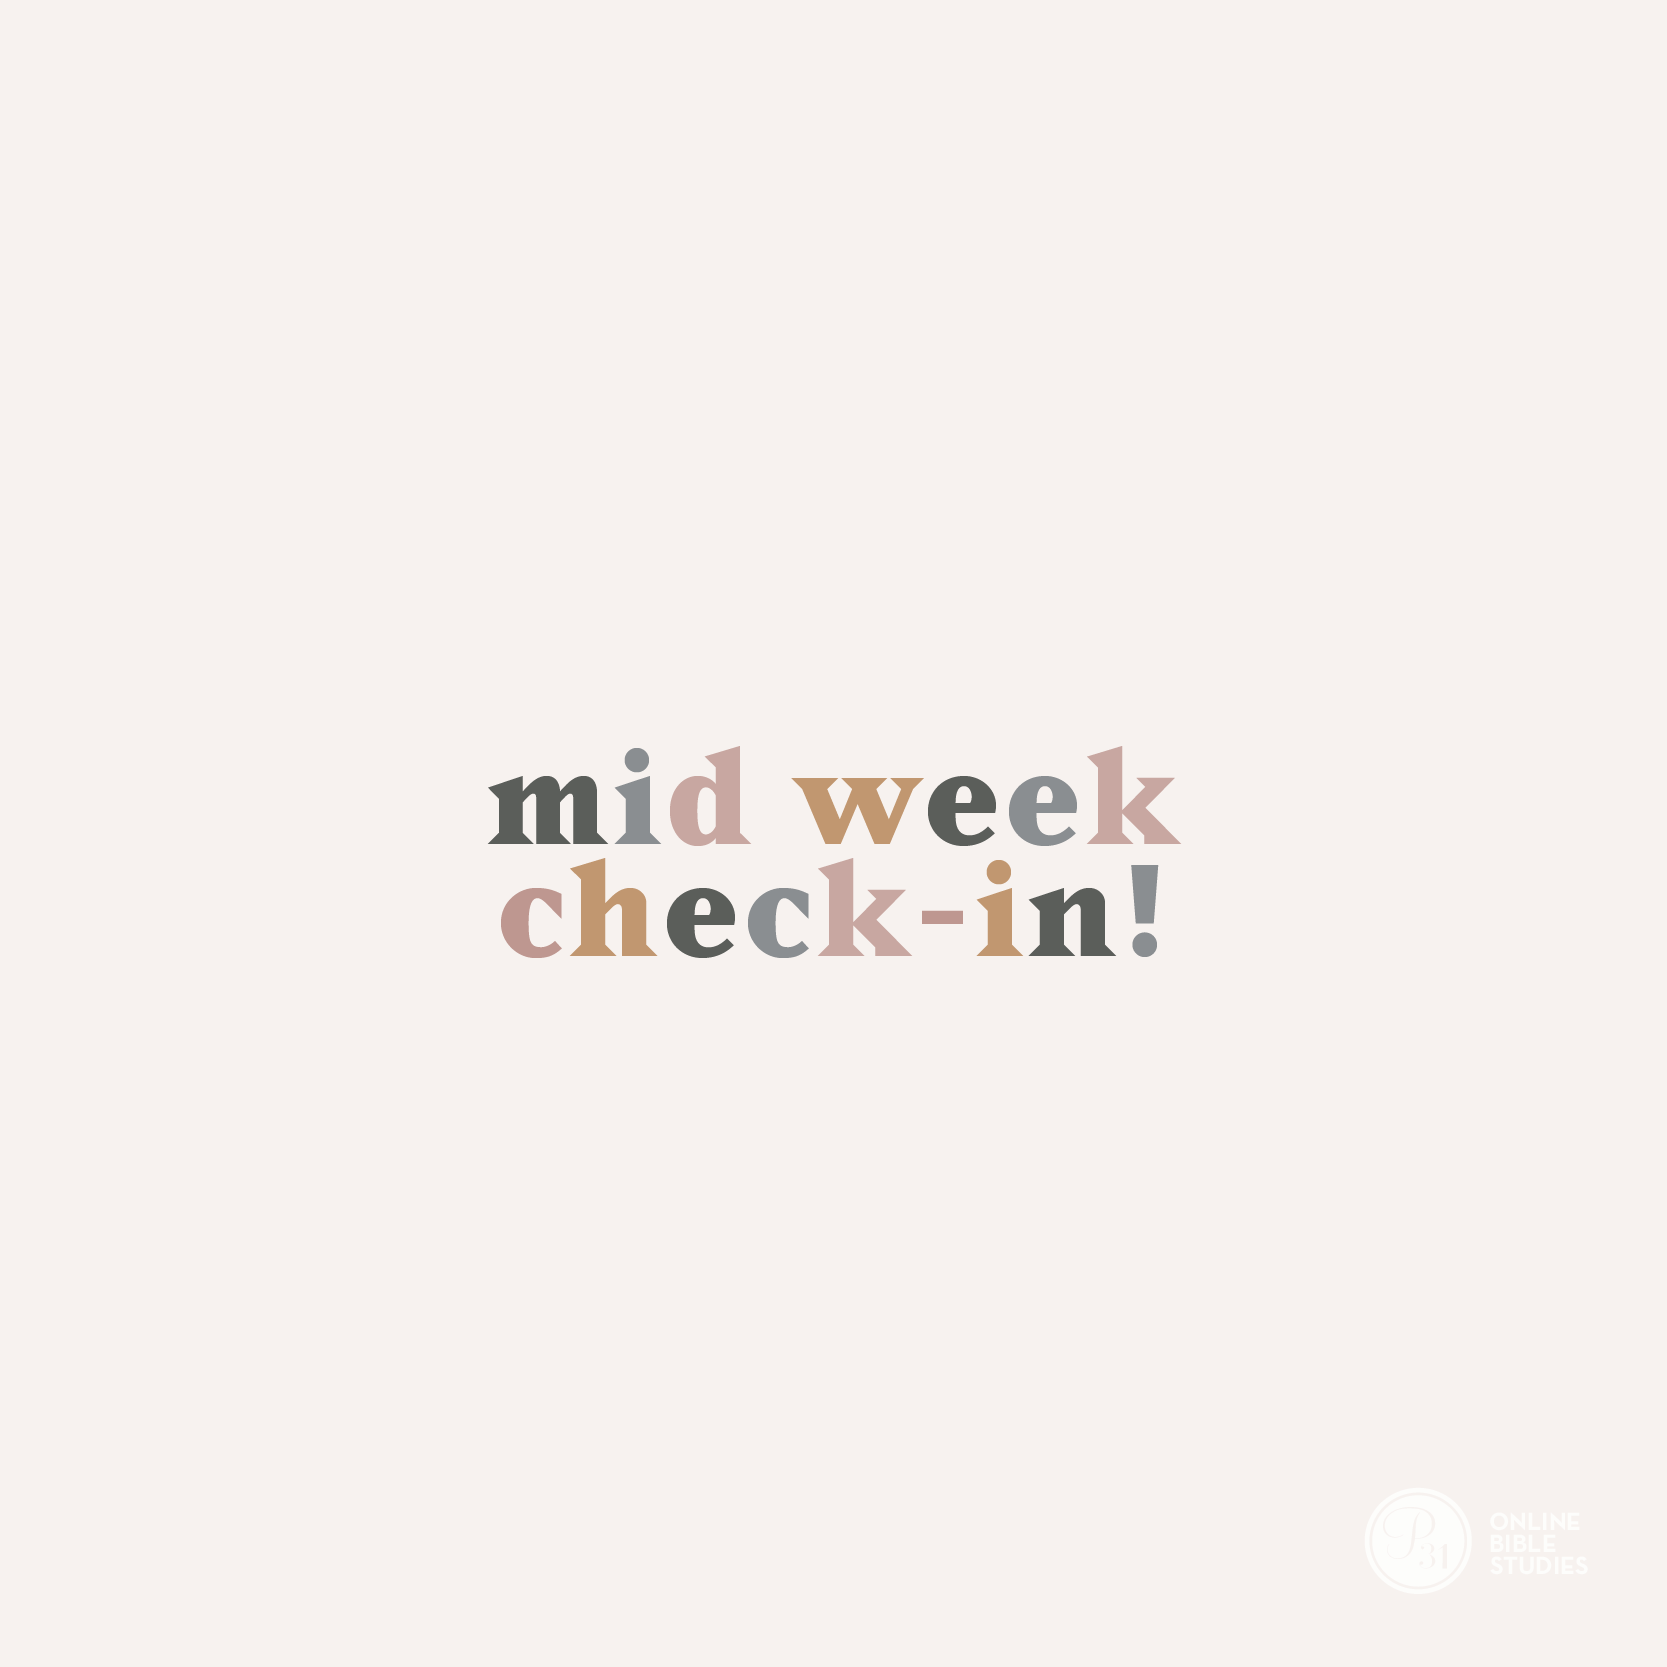 mid week